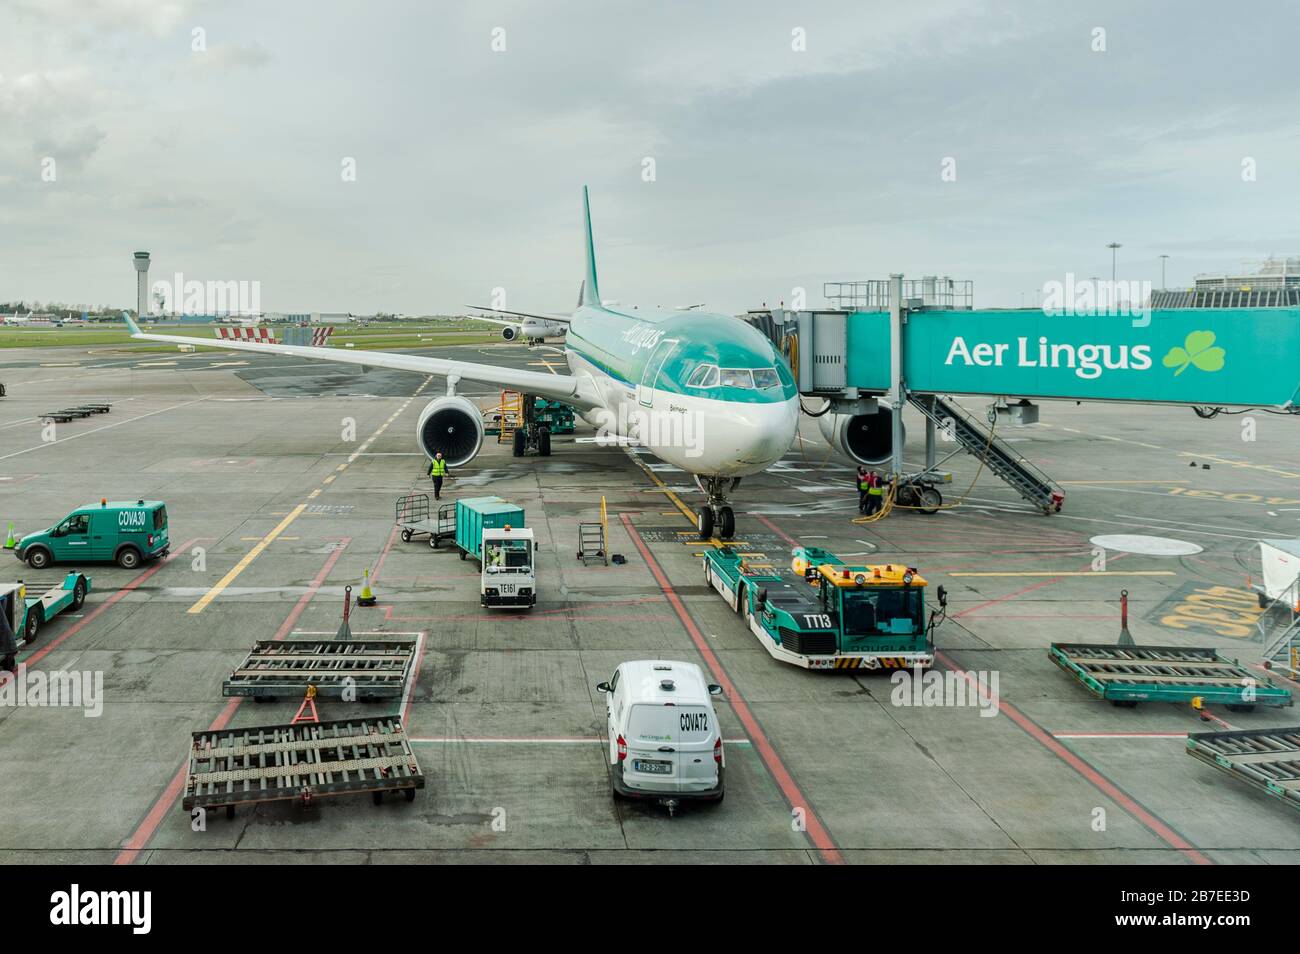 AER Lingus Airbus A330-200 estacionado en la puerta preparando un vuelo en el aeropuerto de Dublín, Irlanda. Foto de stock